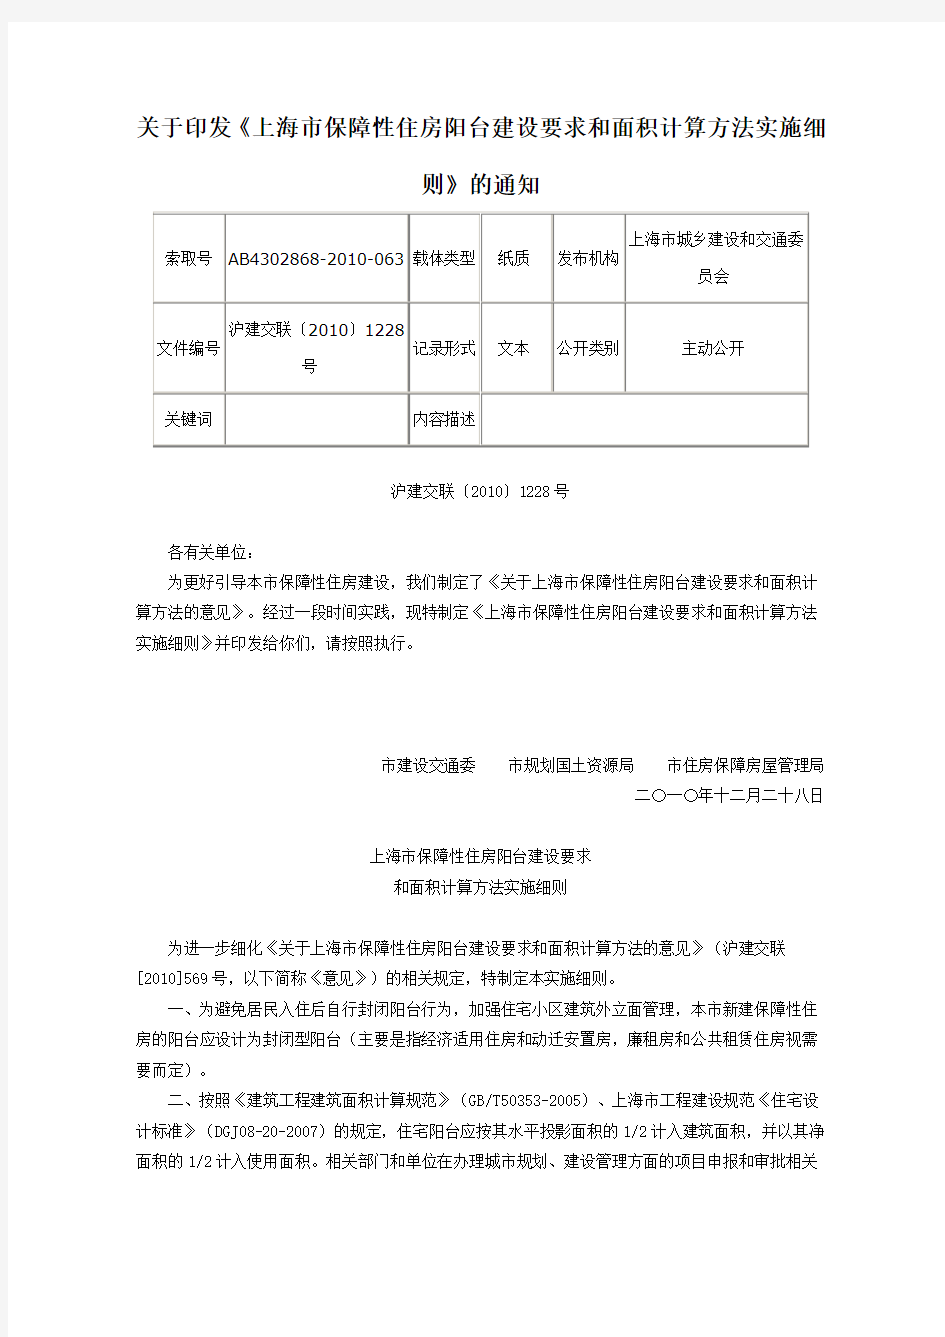 关于印发《上海市保障性住房阳台建设要求和面积计算方法实施细则》的通知